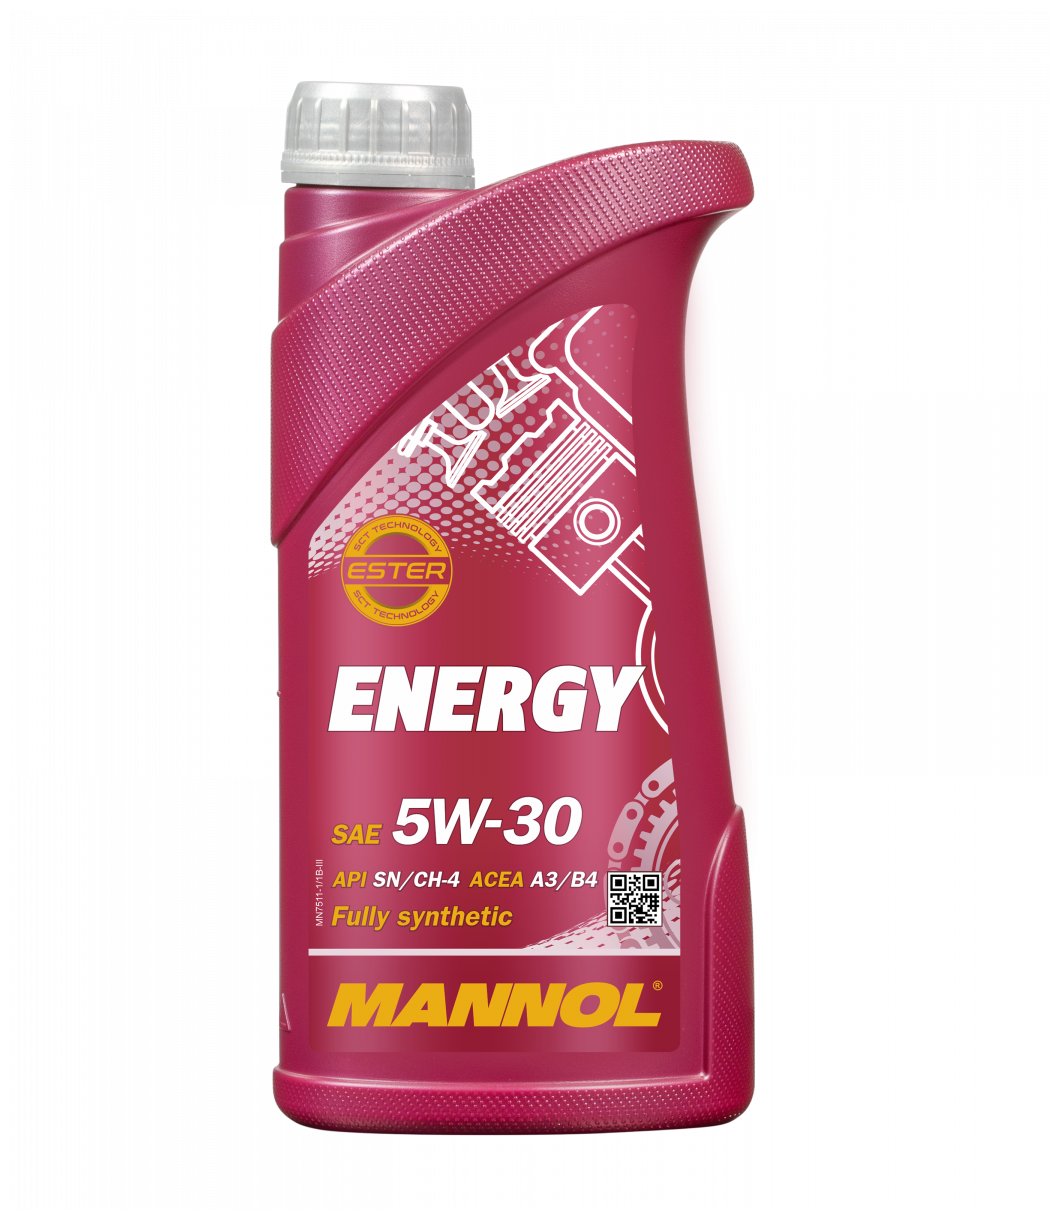 MANNOL 7511-1 Mannol Energy 5w-30 Синтетическое Моторное Масло 5w-30 Api Sl A3b3 1л Ford Wss-M2c913-B,Vw-Norm 502.00/505.00,M...